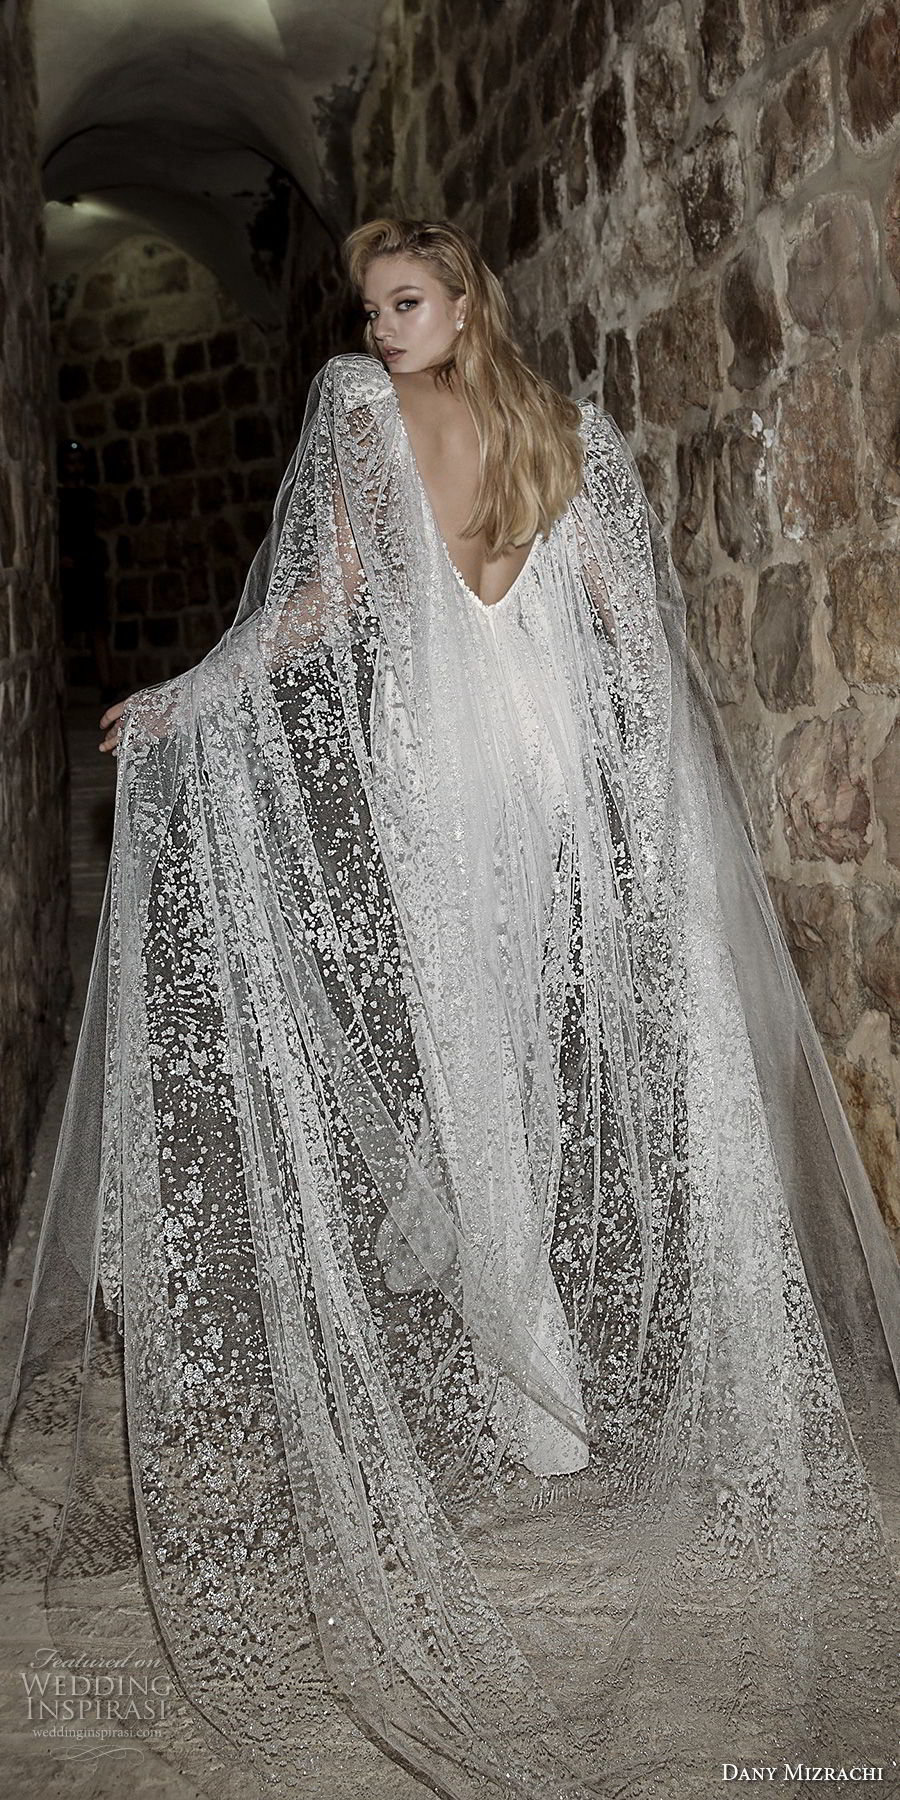 dany mizrachi spring 2018 bridal cap sleeves deep plunging v neck heavily embellished bodice sophiscated jumpsuit wedding dress open v back (36) bv